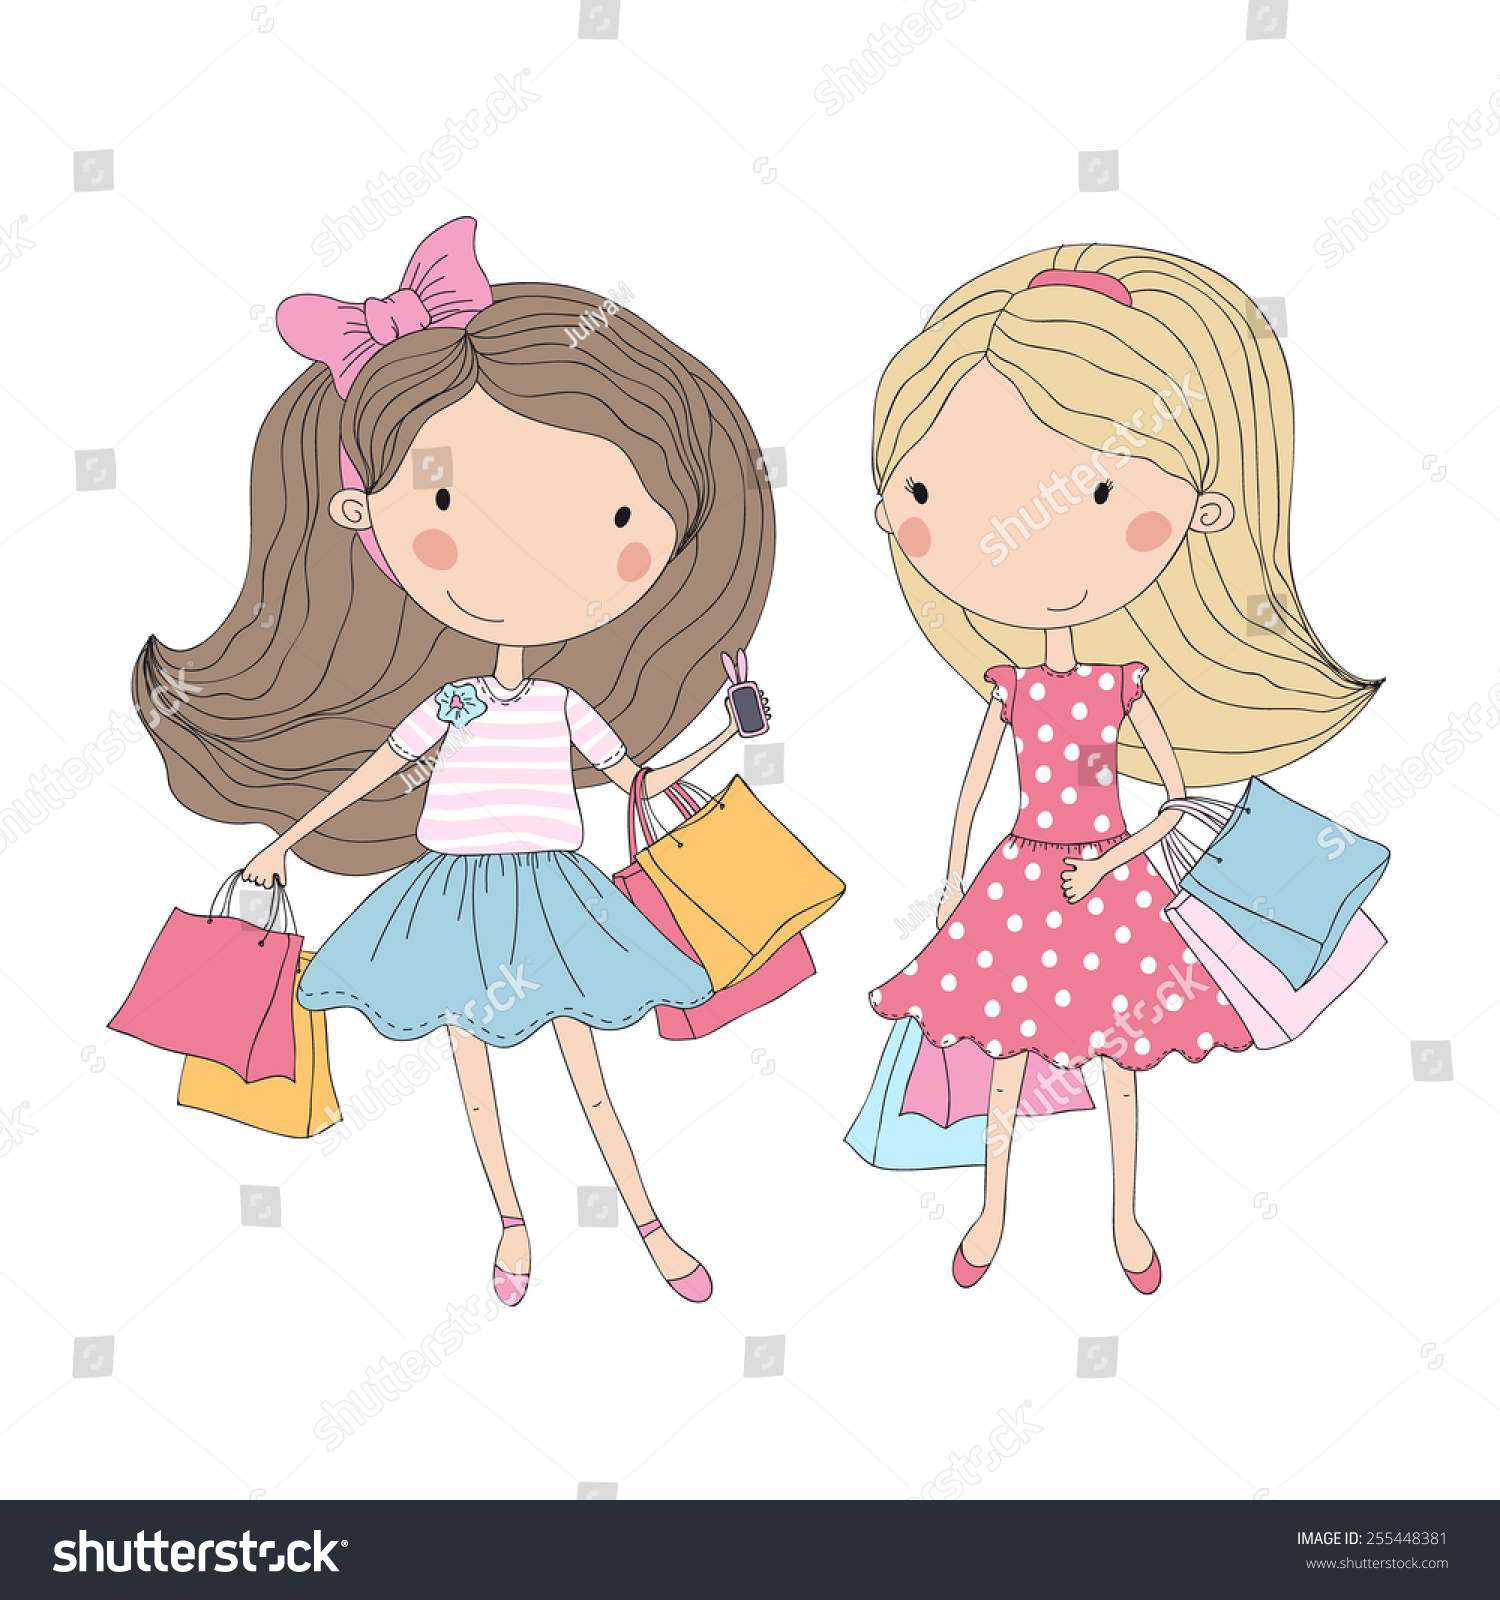 Girls corner. Мультяшные девушки шоппинг. Девушка шоппинг вектор. Мультяшная девушка и шопинг. Две девушки на шоппинге Векторная иллюстрация.